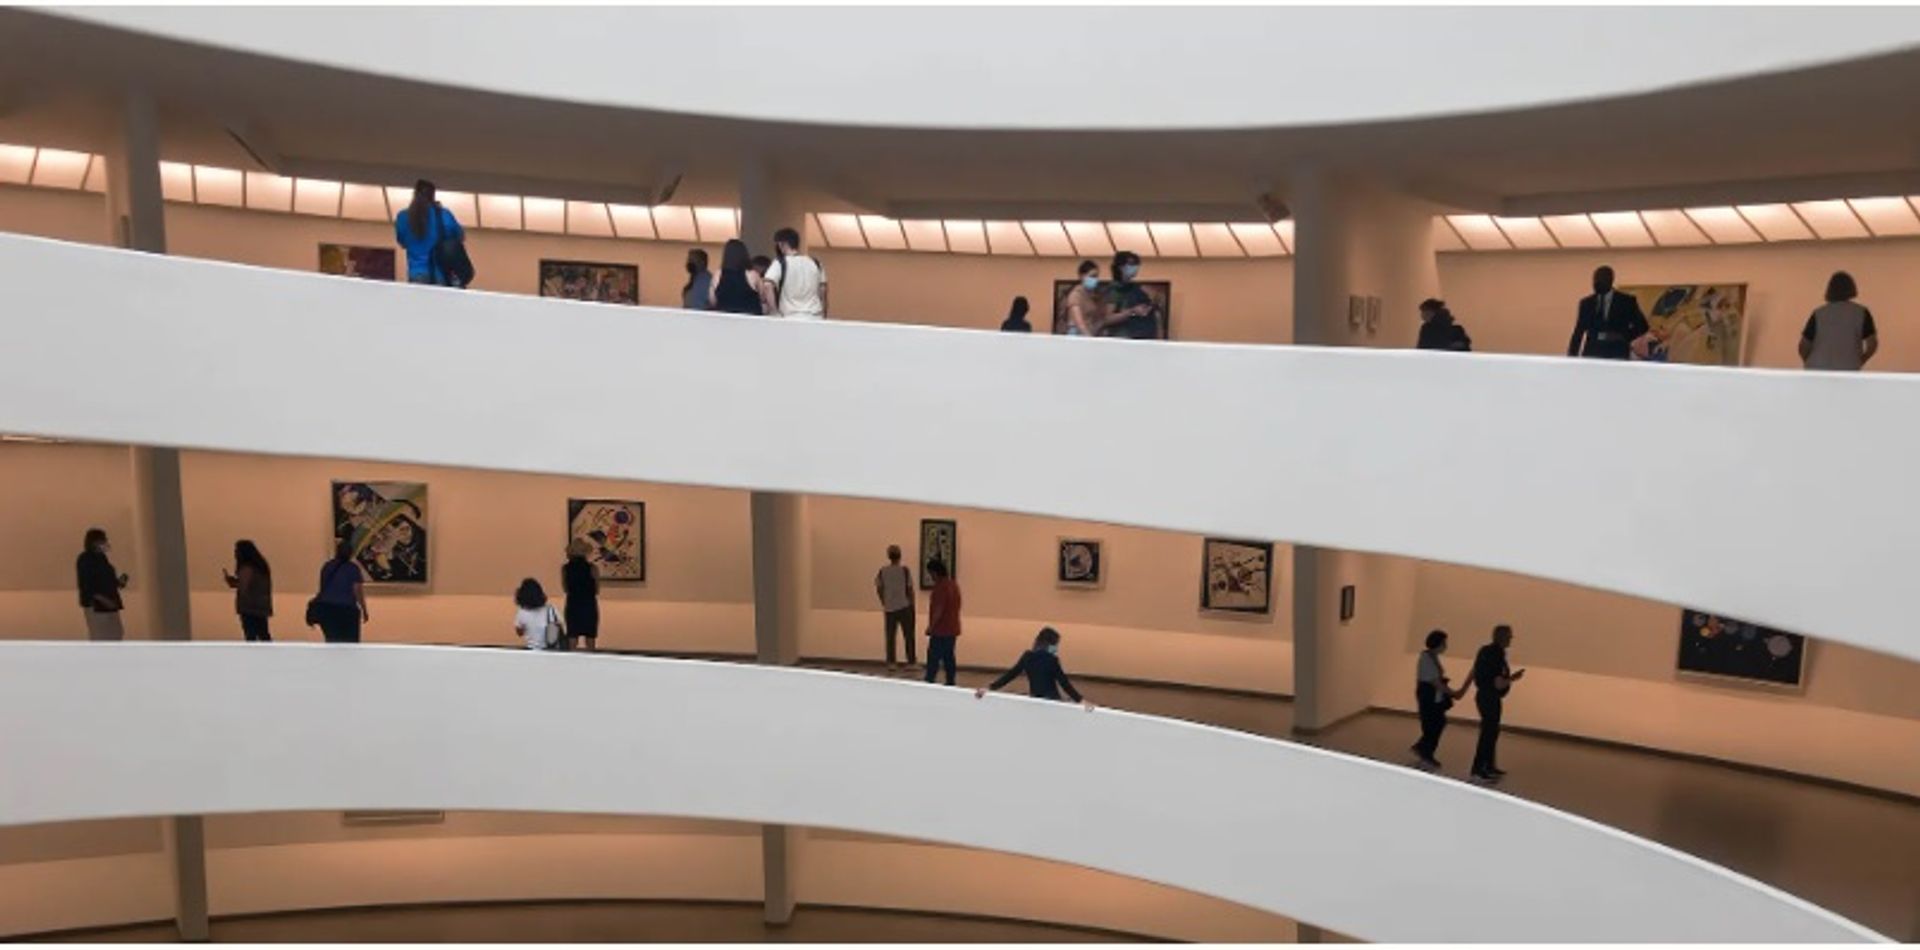 מוזיאון סולומון ר. גוגנהיים בניו יורק, שהצליח לשמור יצירה של פיקאסו שנבזזה לכאורה על ידי הנאצים לאחר שהגיע להסדר עם יורש ב-2009

תמונה מאת דיוויד ברוסארד, באמצעות פליקר